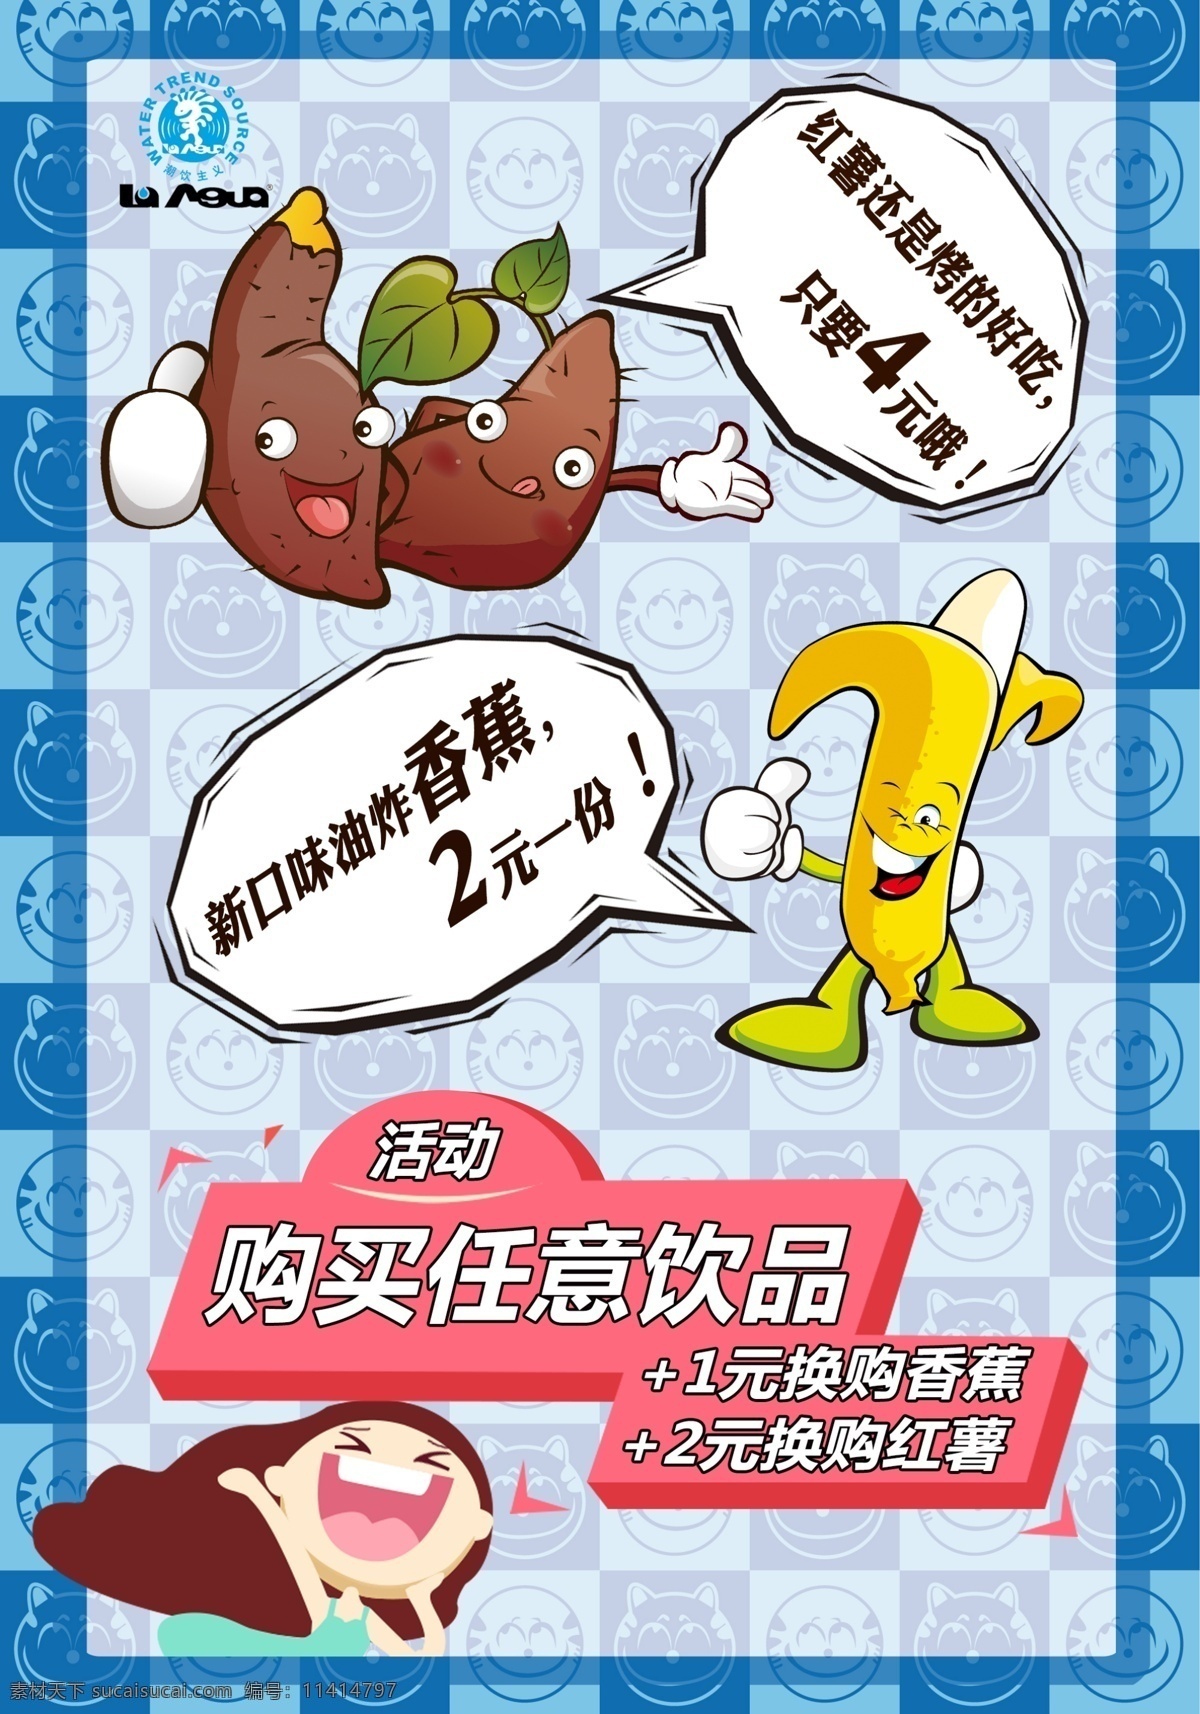 灯片食品海报 灯片 食品 海报 烤红薯 炸香蕉 活动